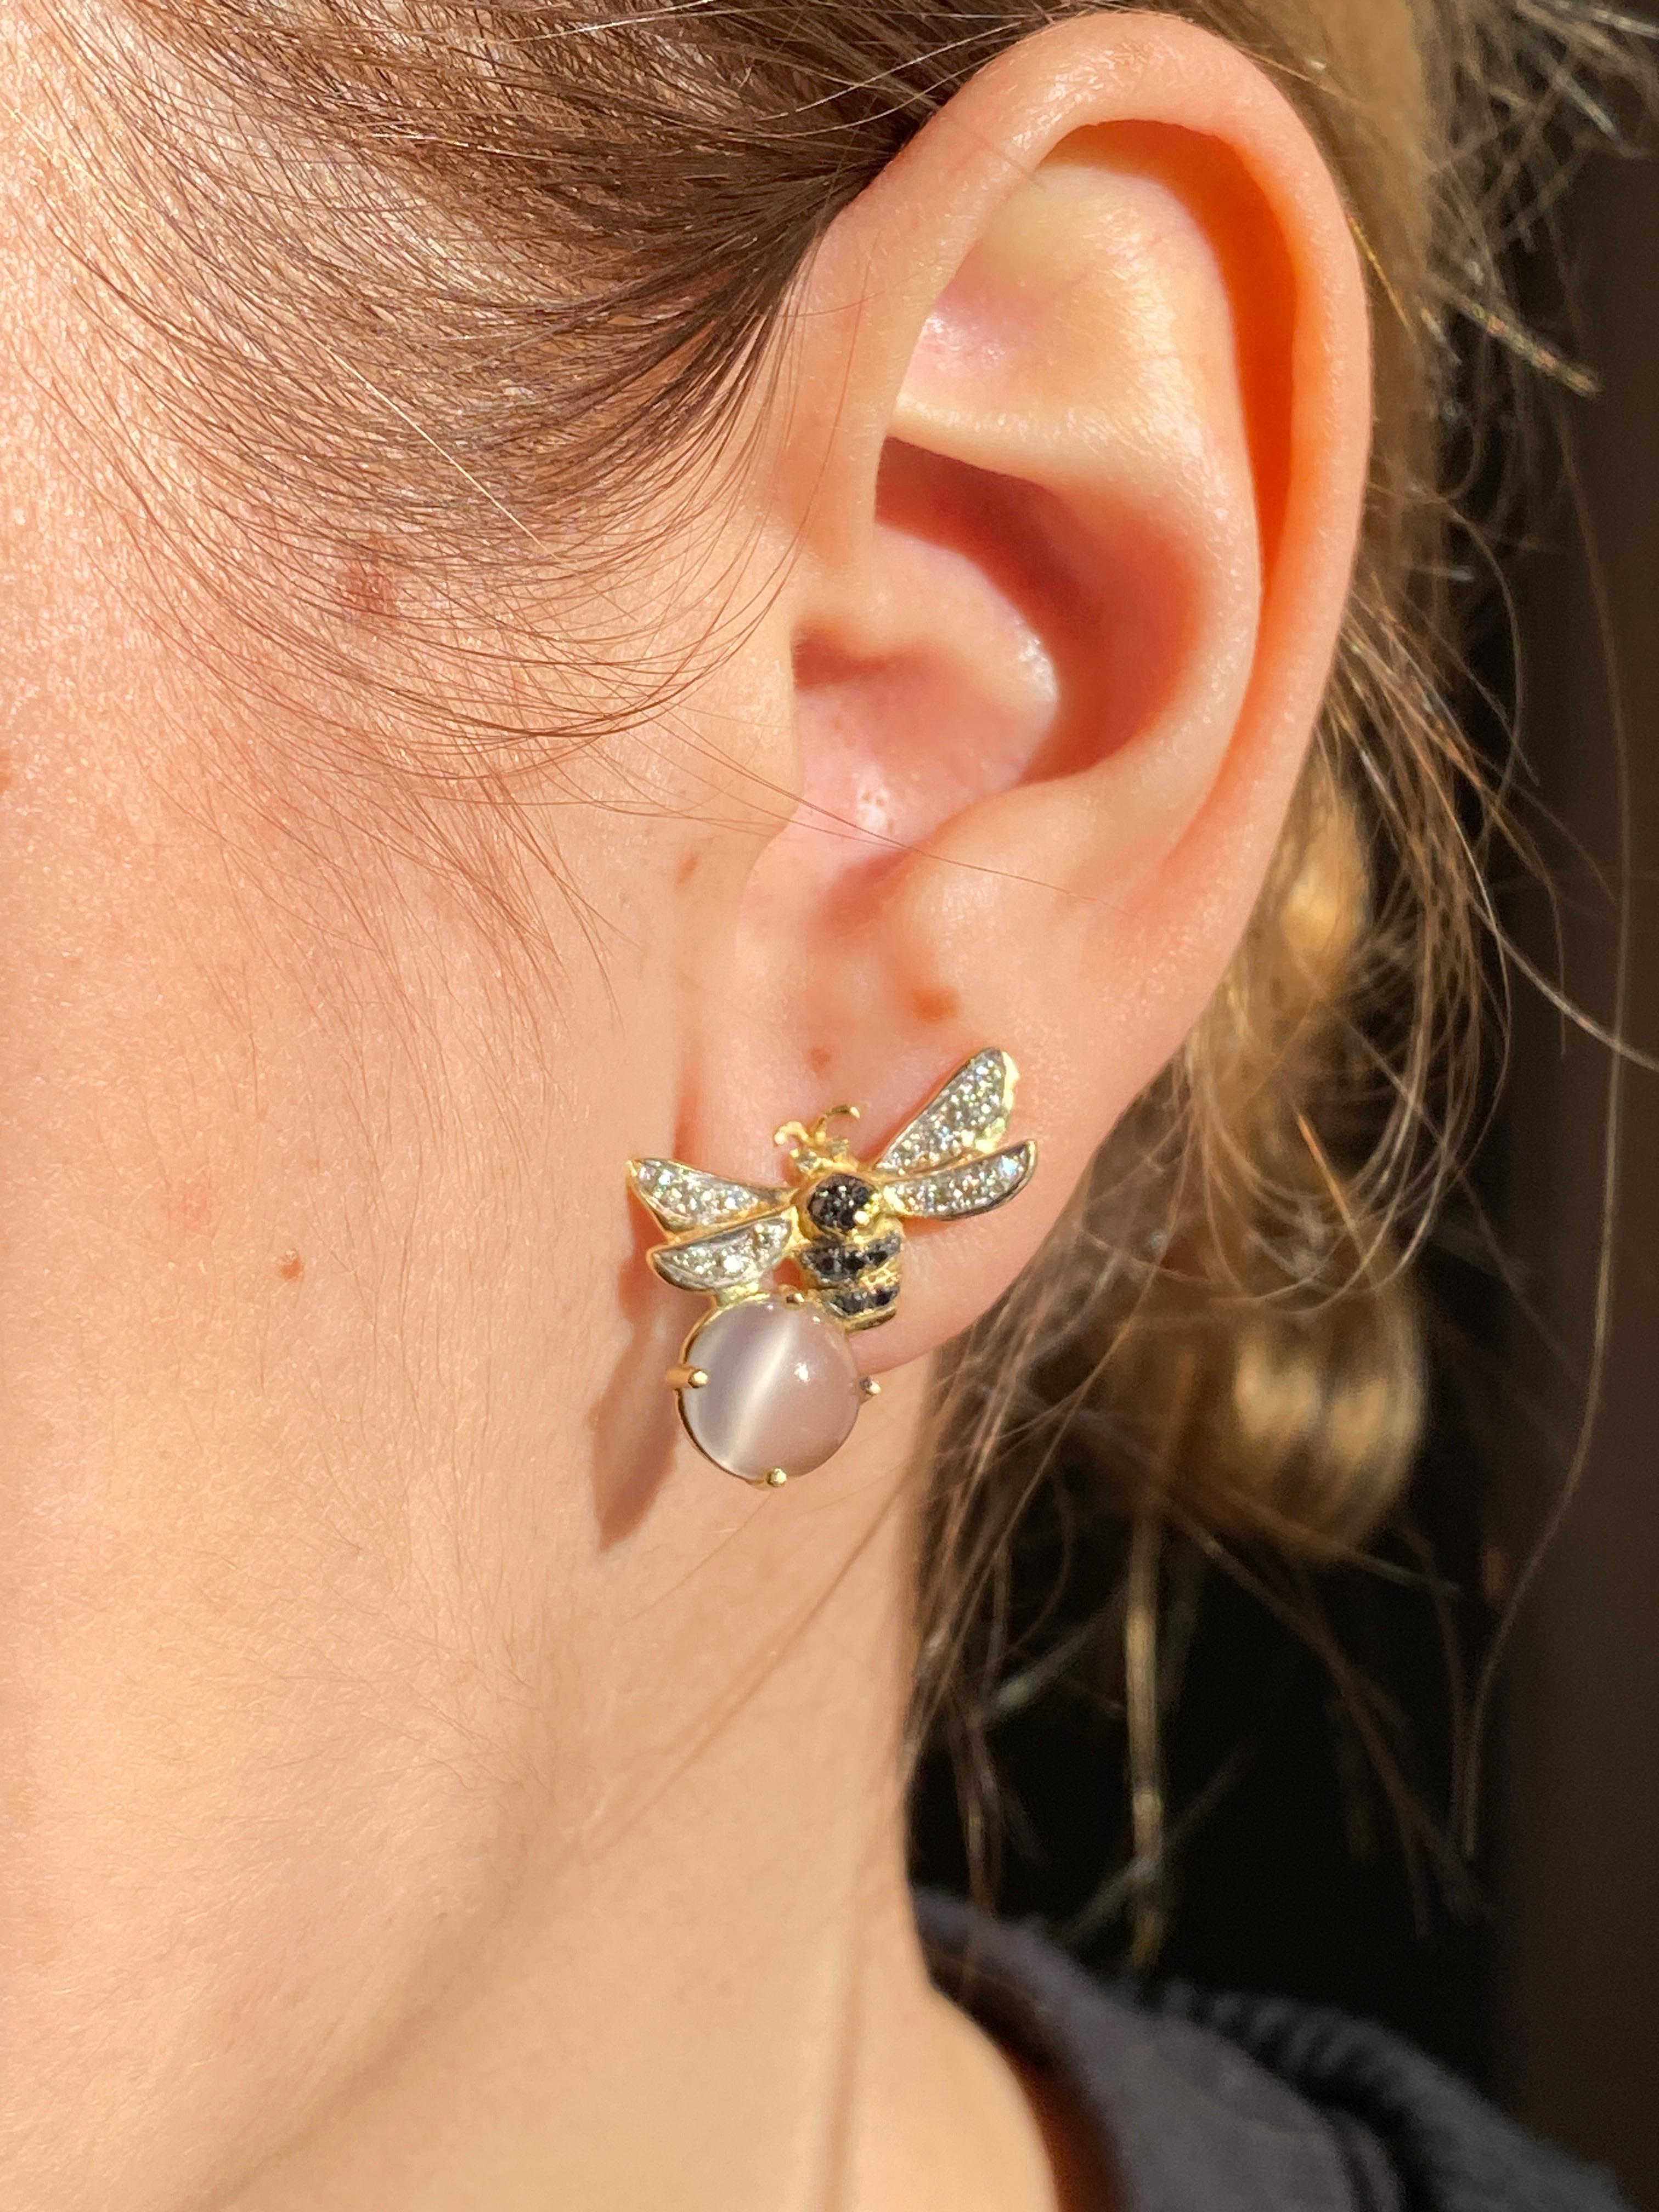 Rossella Ugolini stellt die Bee Collection'S vor  ein Meisterwerk handgefertigter Eleganz. Diese Ohrringe aus 18 Karat Gelbgold, verziert mit  ct. 0,20 weiße Diamanten und 0,18 ct schwarze Diamanten, zeigen die alte Technik des verlorenen Wachses